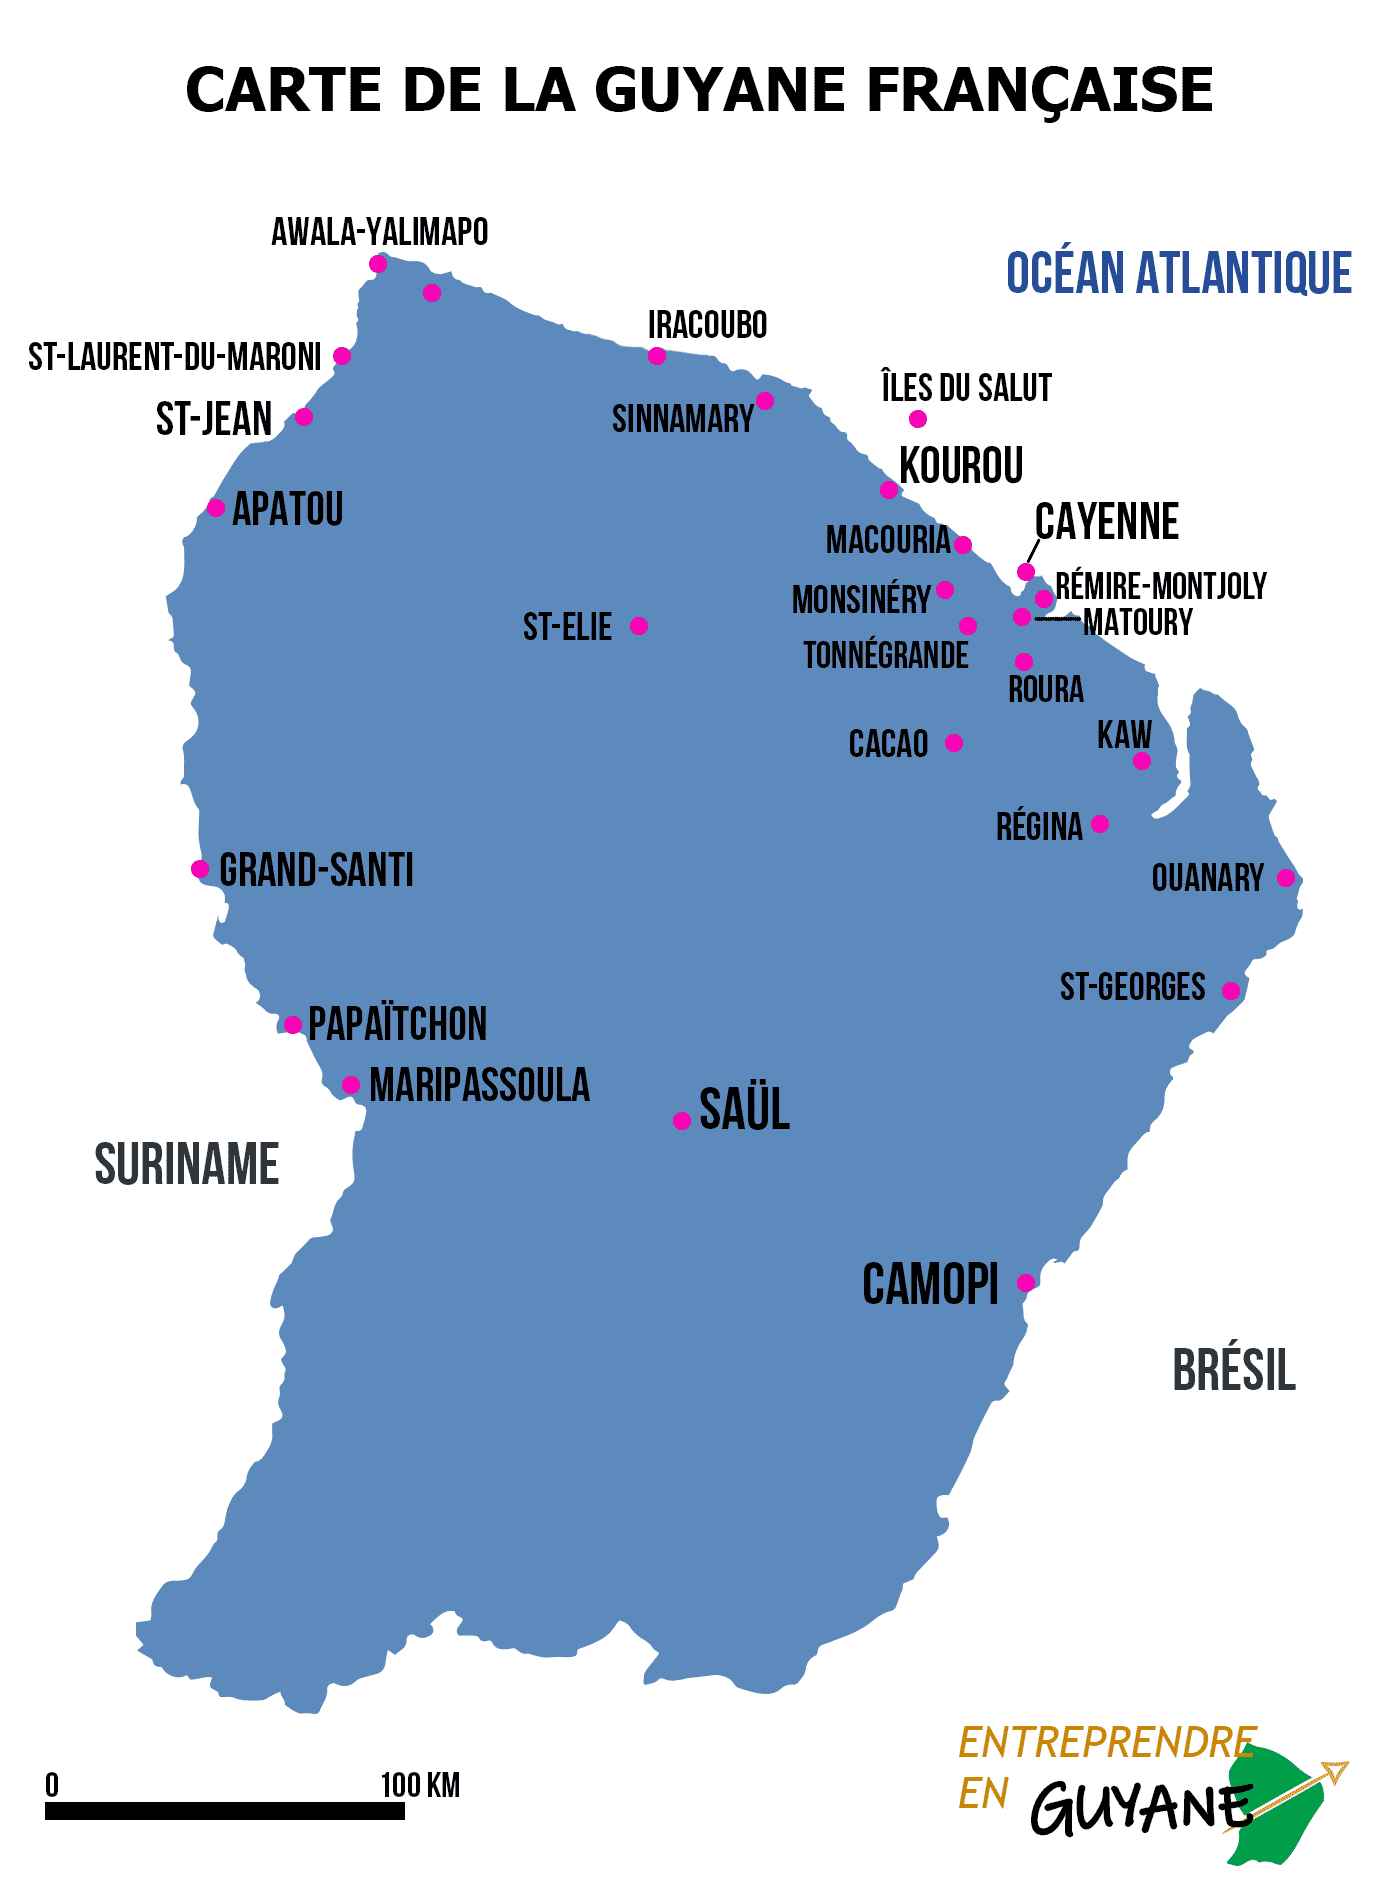 Guyane française: situation géographique